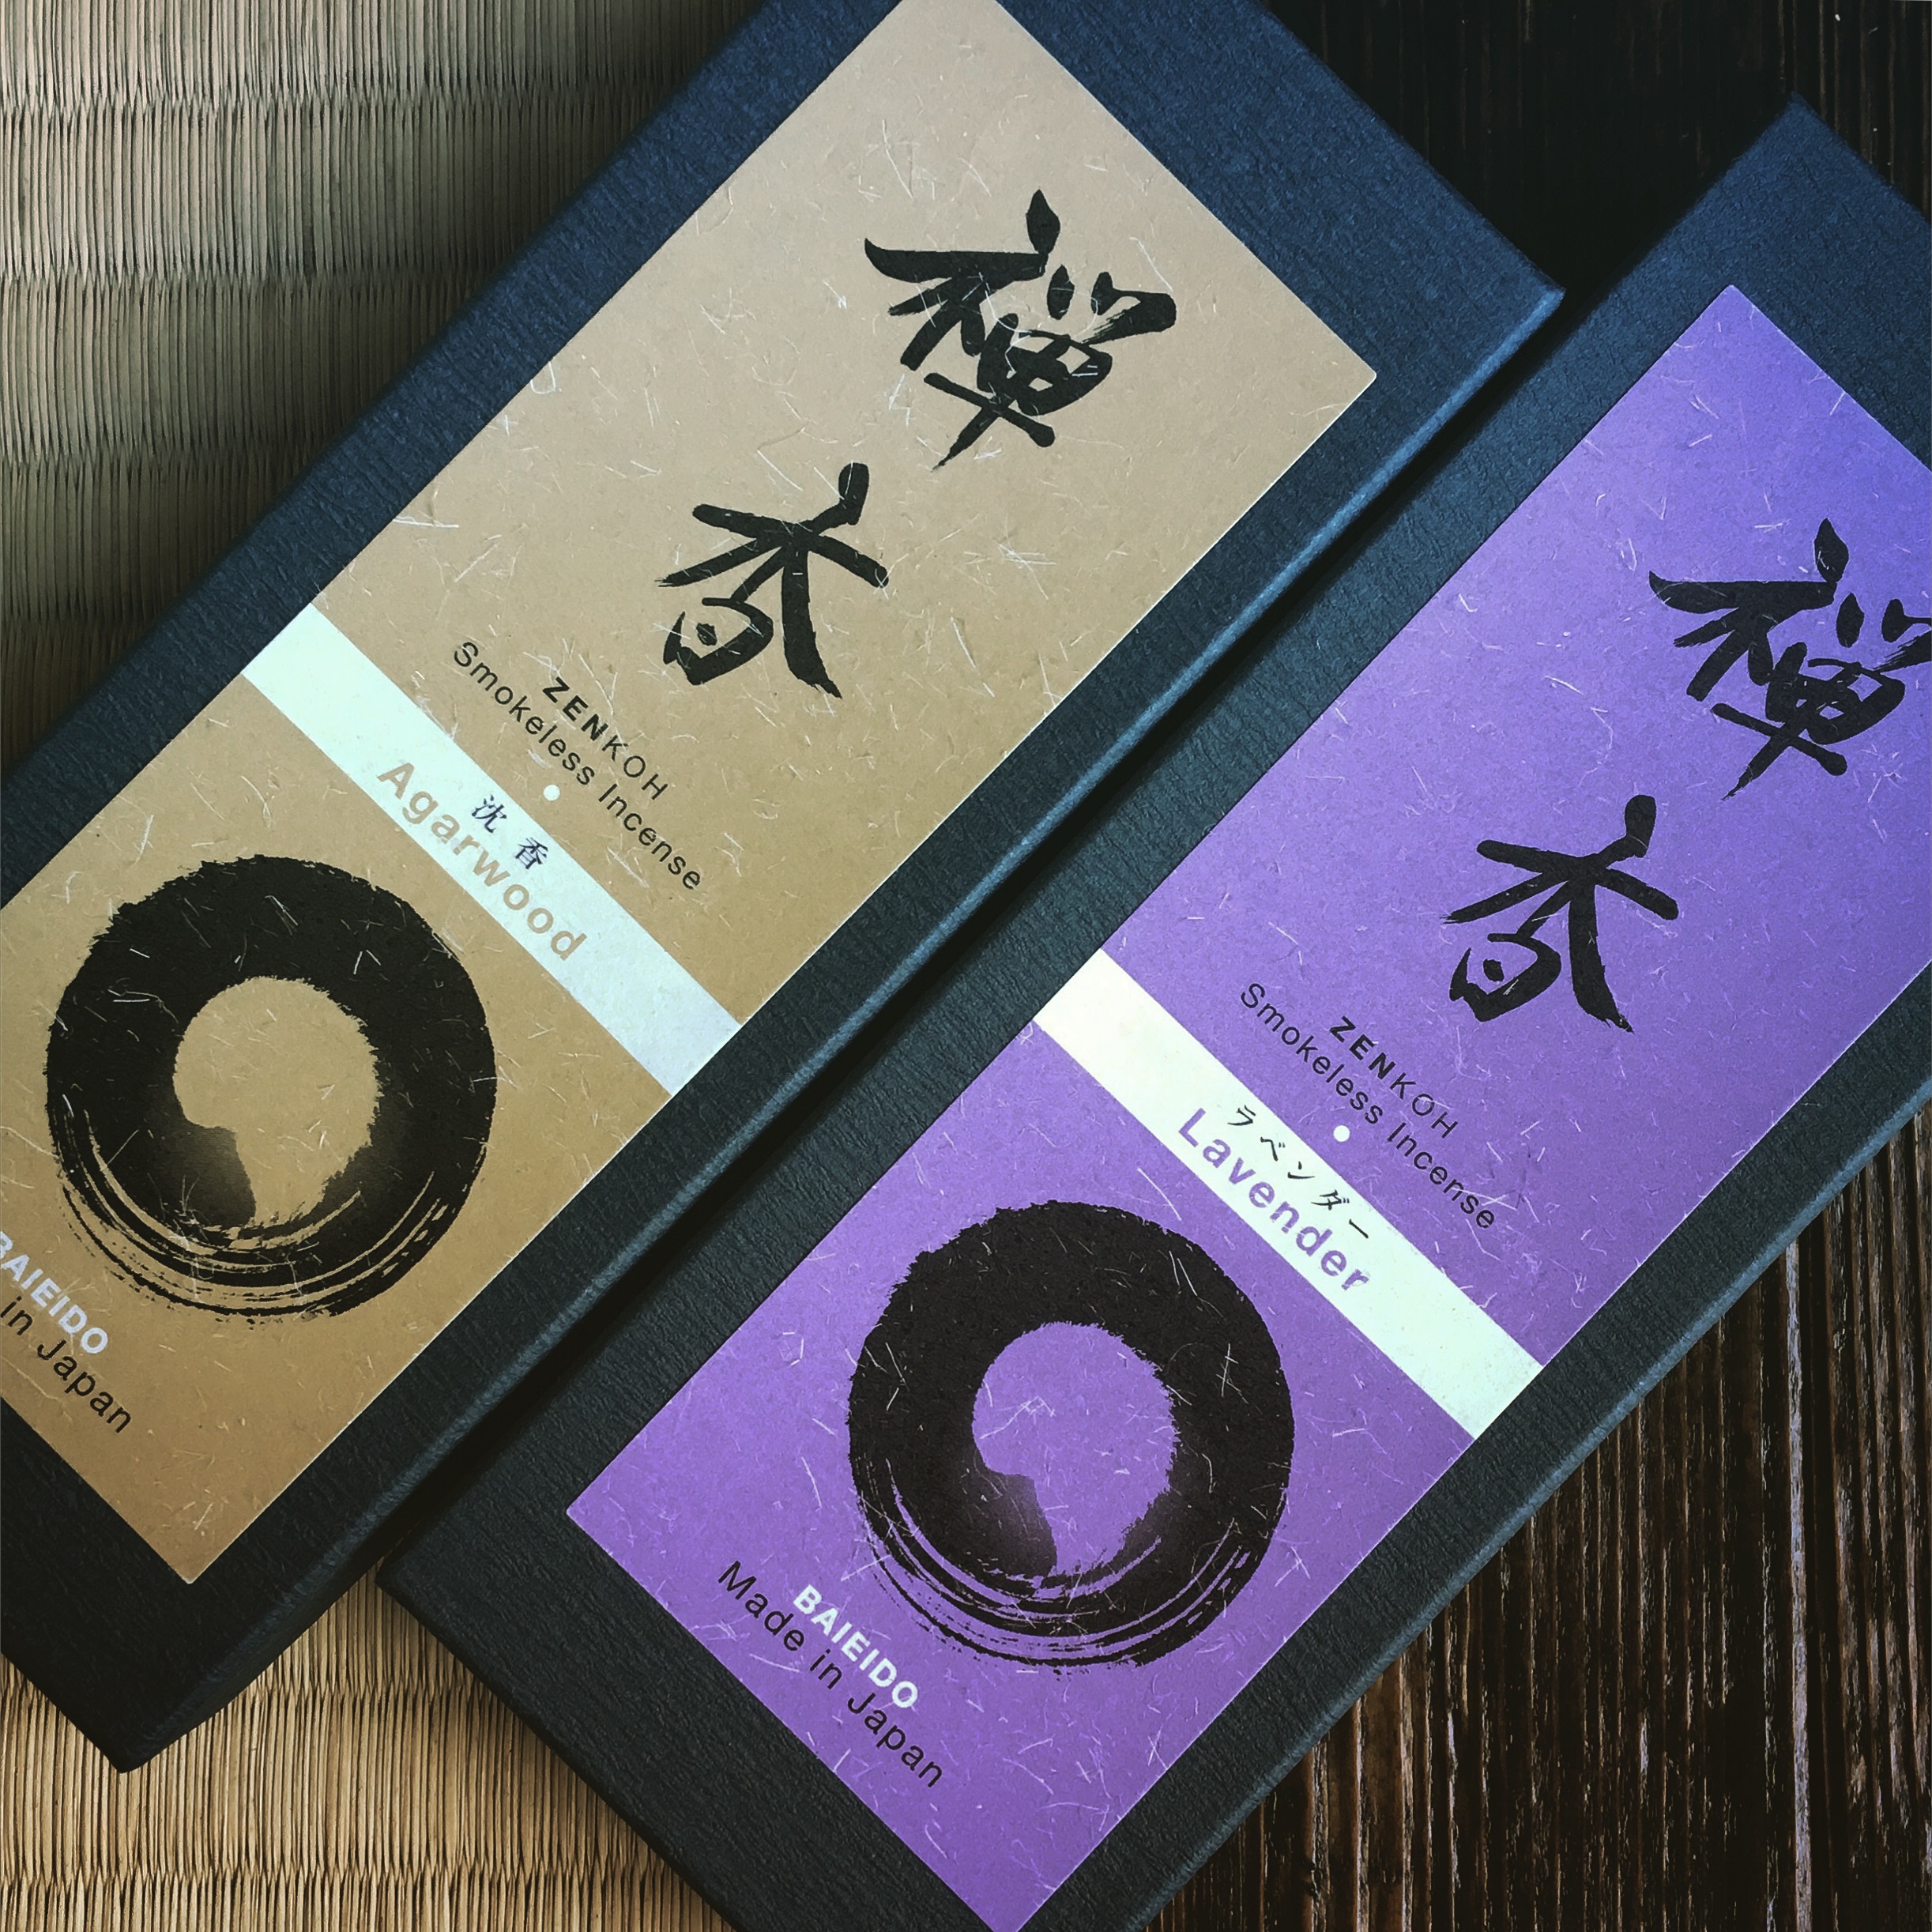 【香源 上野桜木店】メーカー梅栄堂さんより、座禅・瞑想に特化したお香「禅香」が発売されました。